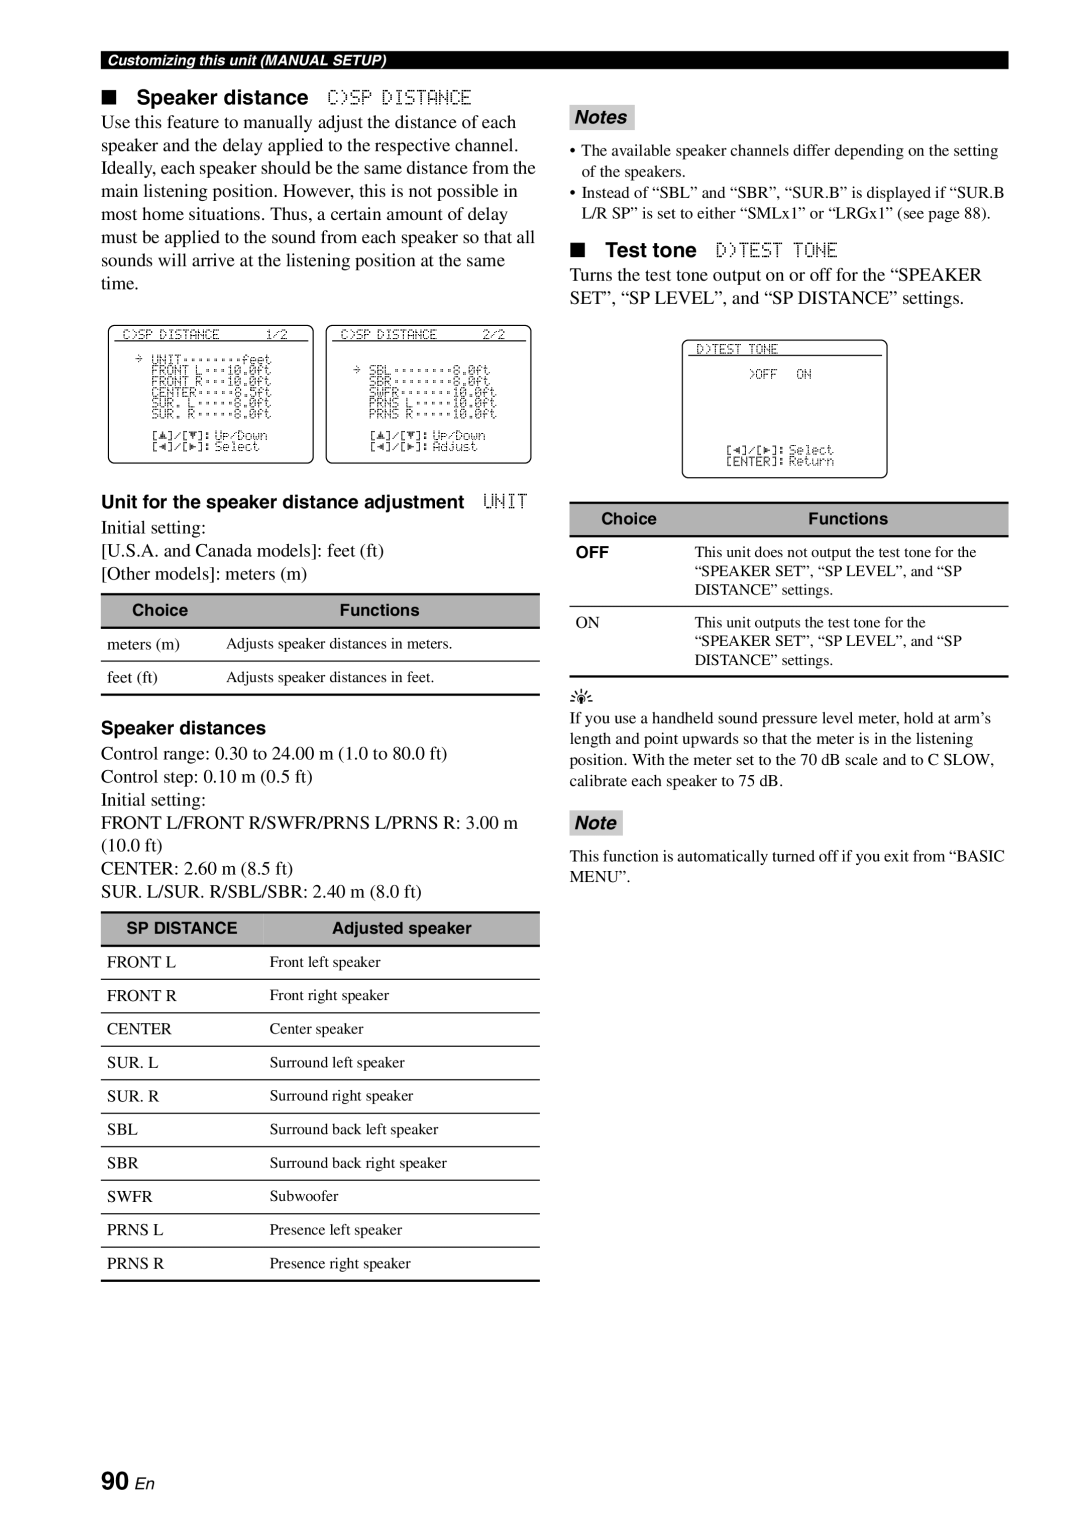 Yamaha HTR-6180 owner manual 90 En, Speaker distance CSP DISTANCE, Notes 